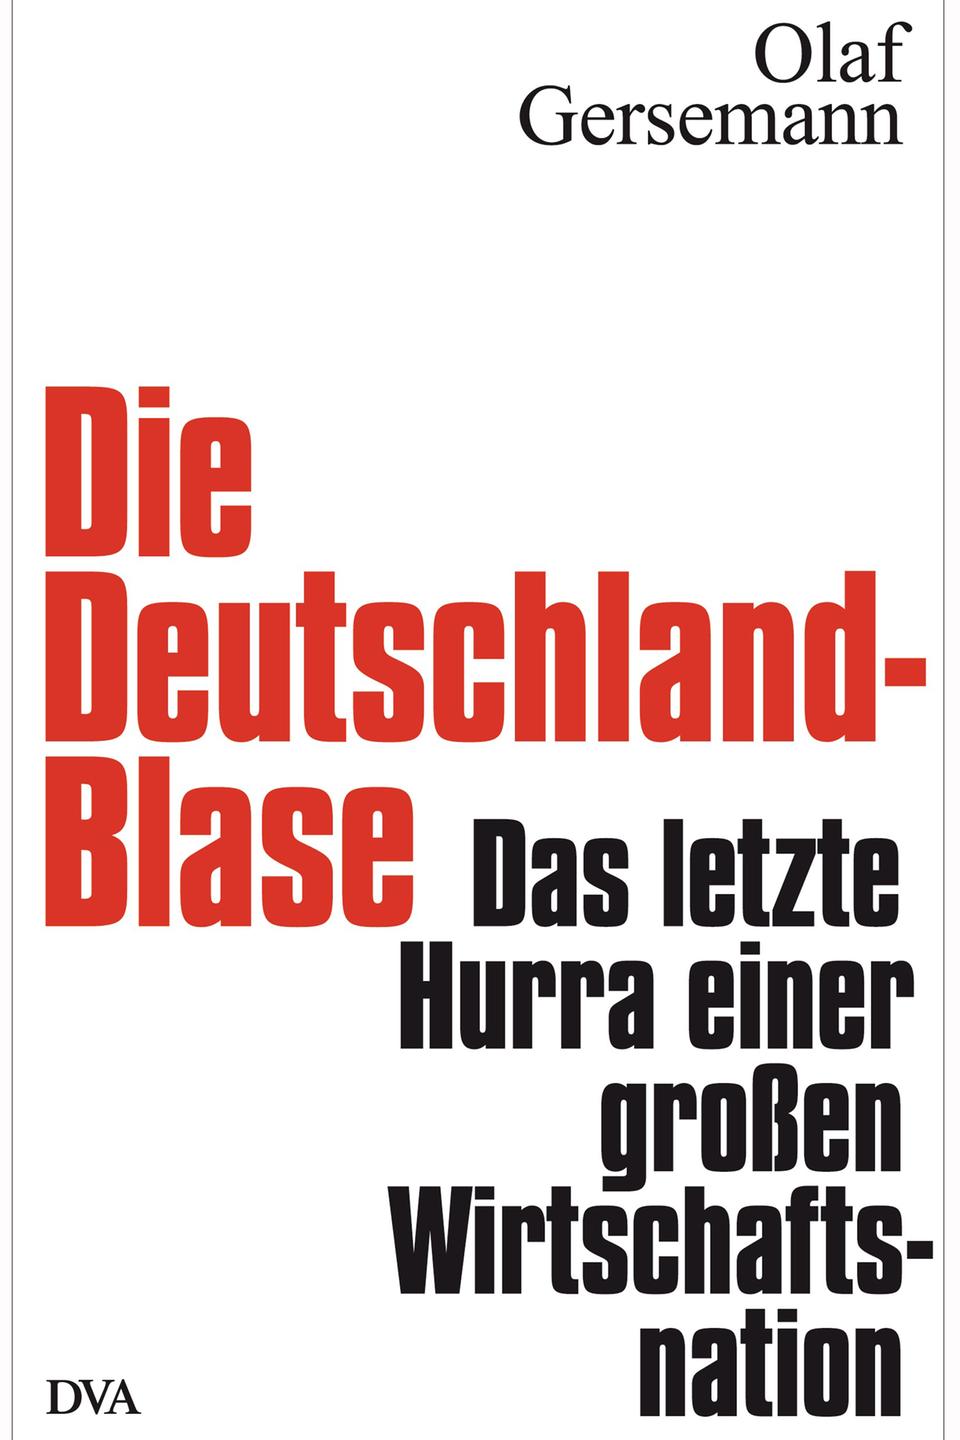 Buchcover: Olaf Gersemann "Die Deutschland-Blase: Das letzte Hurra einer großen Wirtschaftsnation"